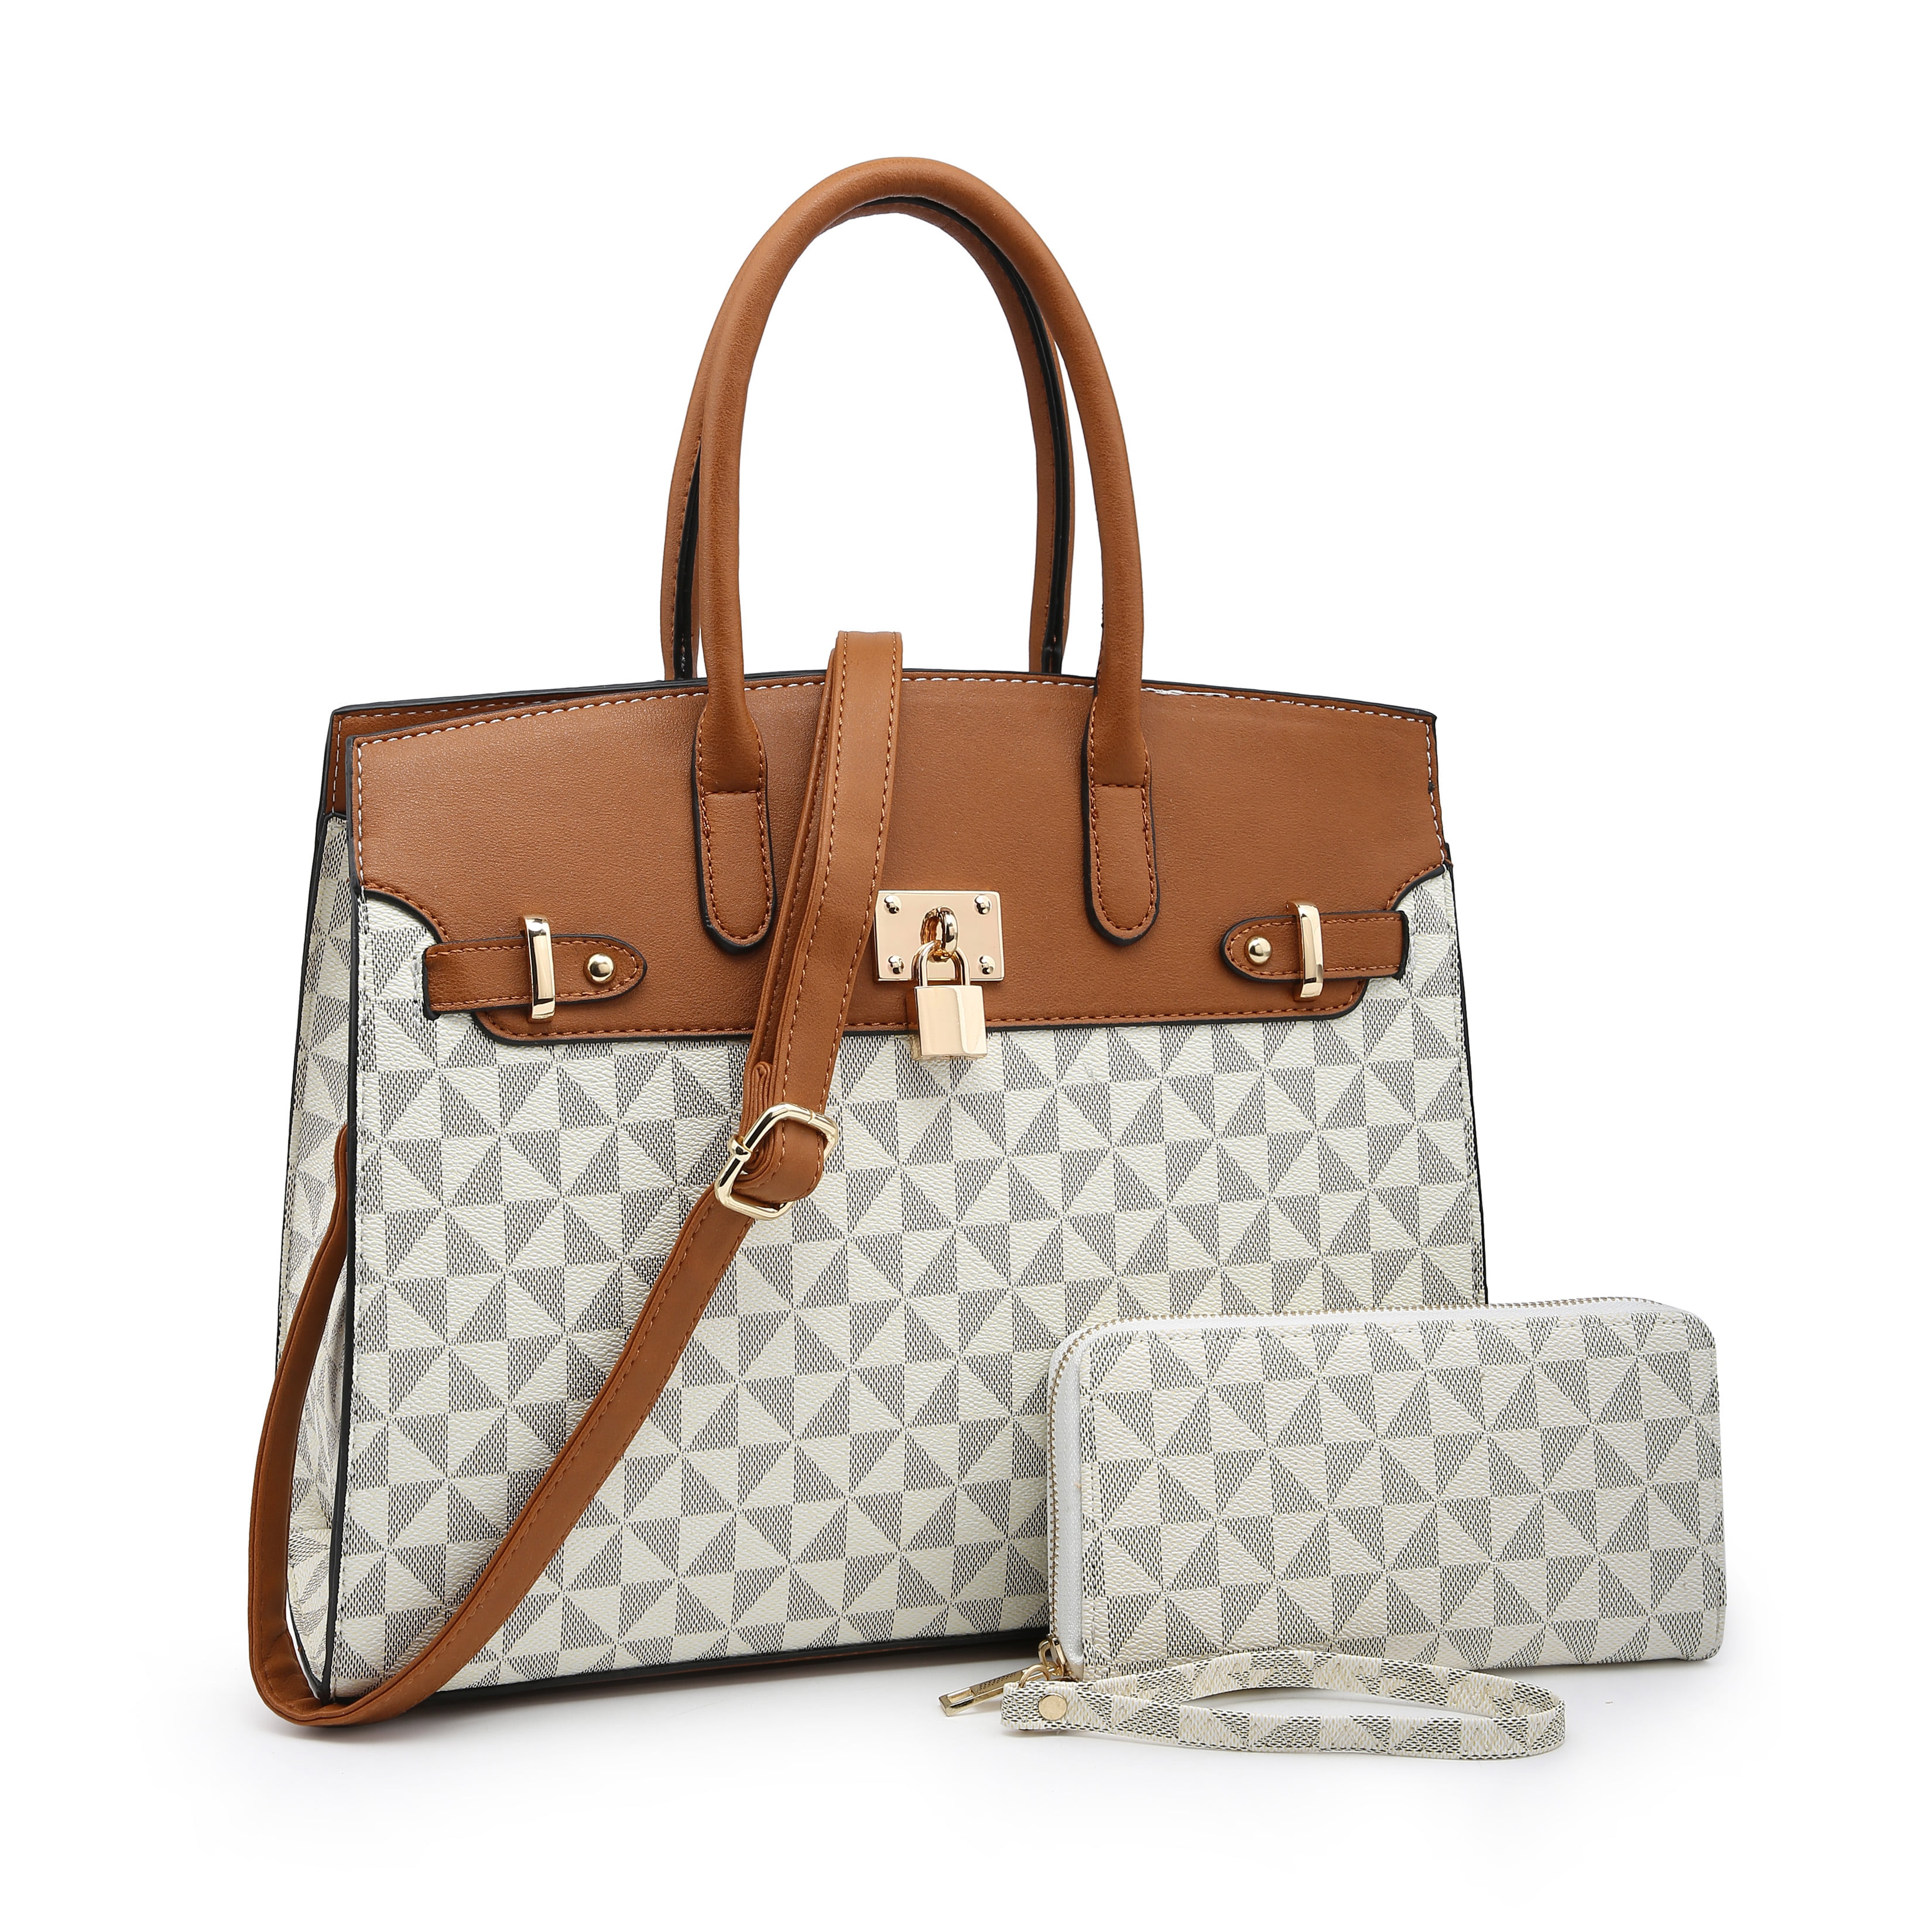 POPPY Women's Top Handle Satchel Handbags with Wallet Vegan Leather ...